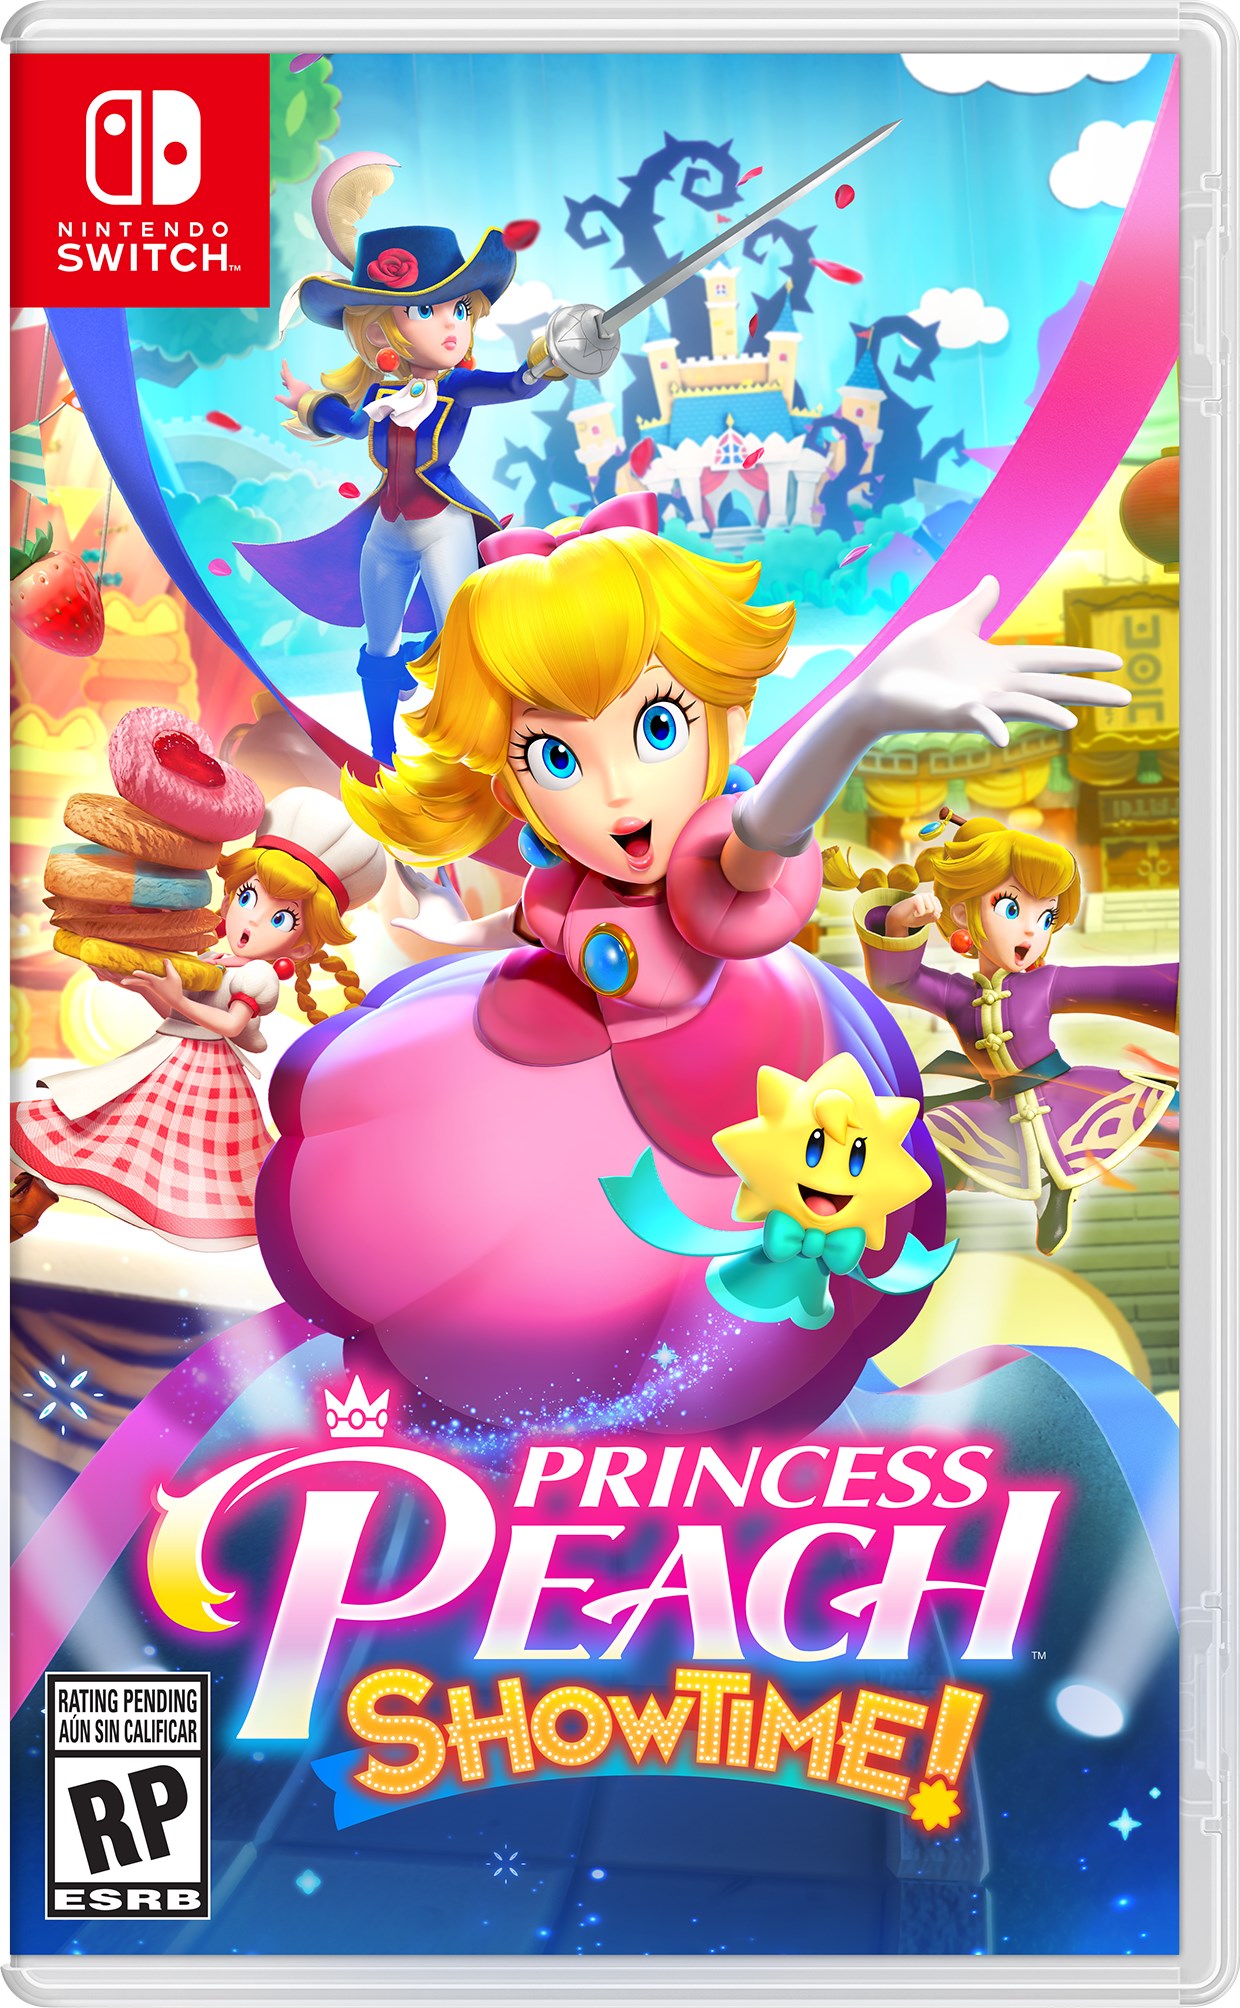 Princess-Peach-Showtime-boxart.jpg